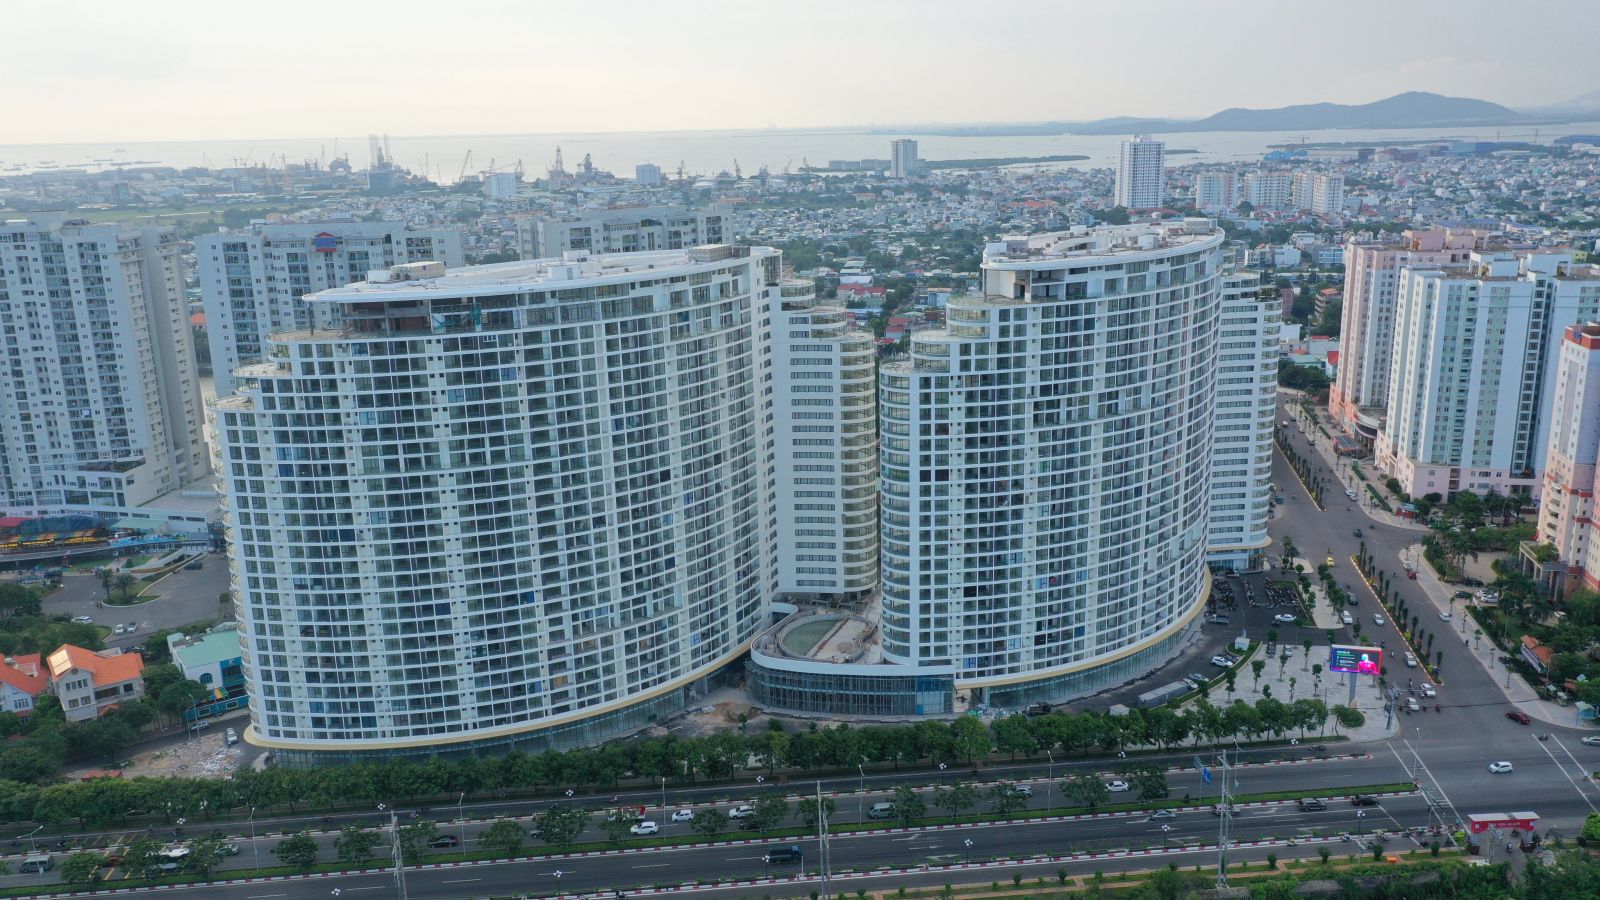 Khu đô thị DIC Chí Linh City Vũng Tàu là hình mẫu lý tưởng về việc tạo dựng khu đô thị đa chức năng, đóng vai trò quan trọng trong tiến trình hiện đại hóa, tạo dựng bộ mặt của TP. Vũng Tàu